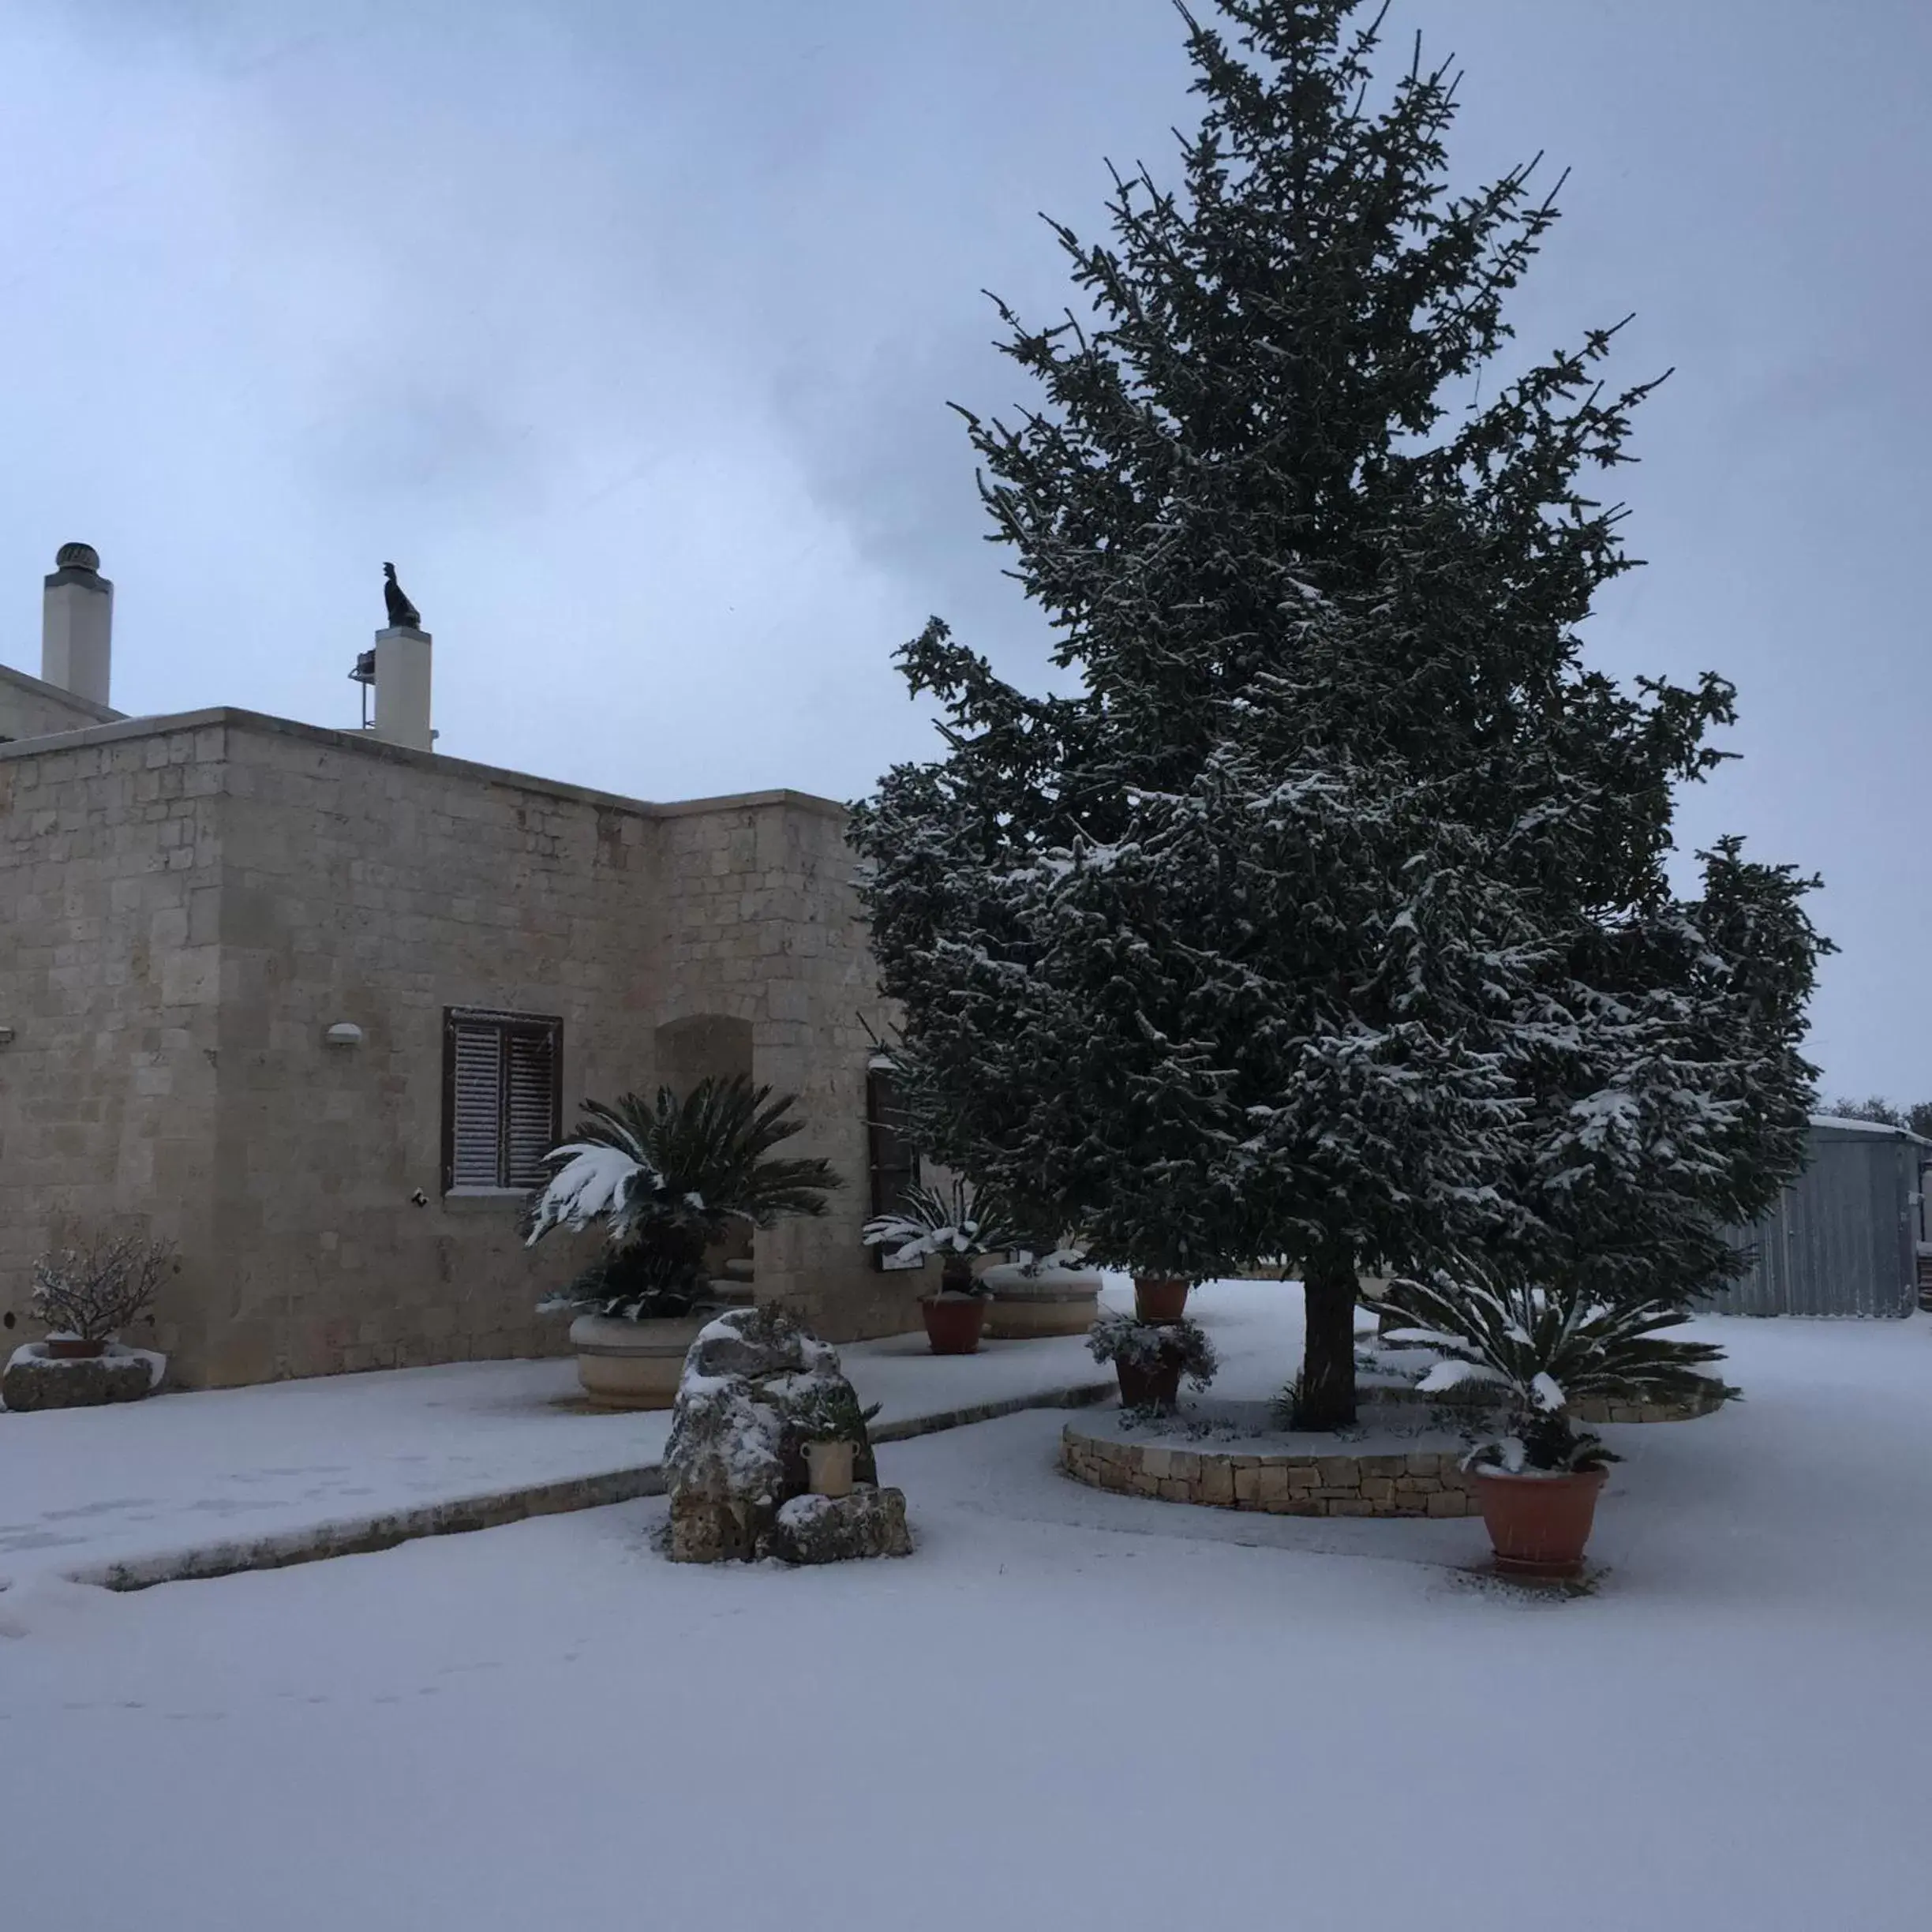 On site, Winter in B&B Villa Grassi